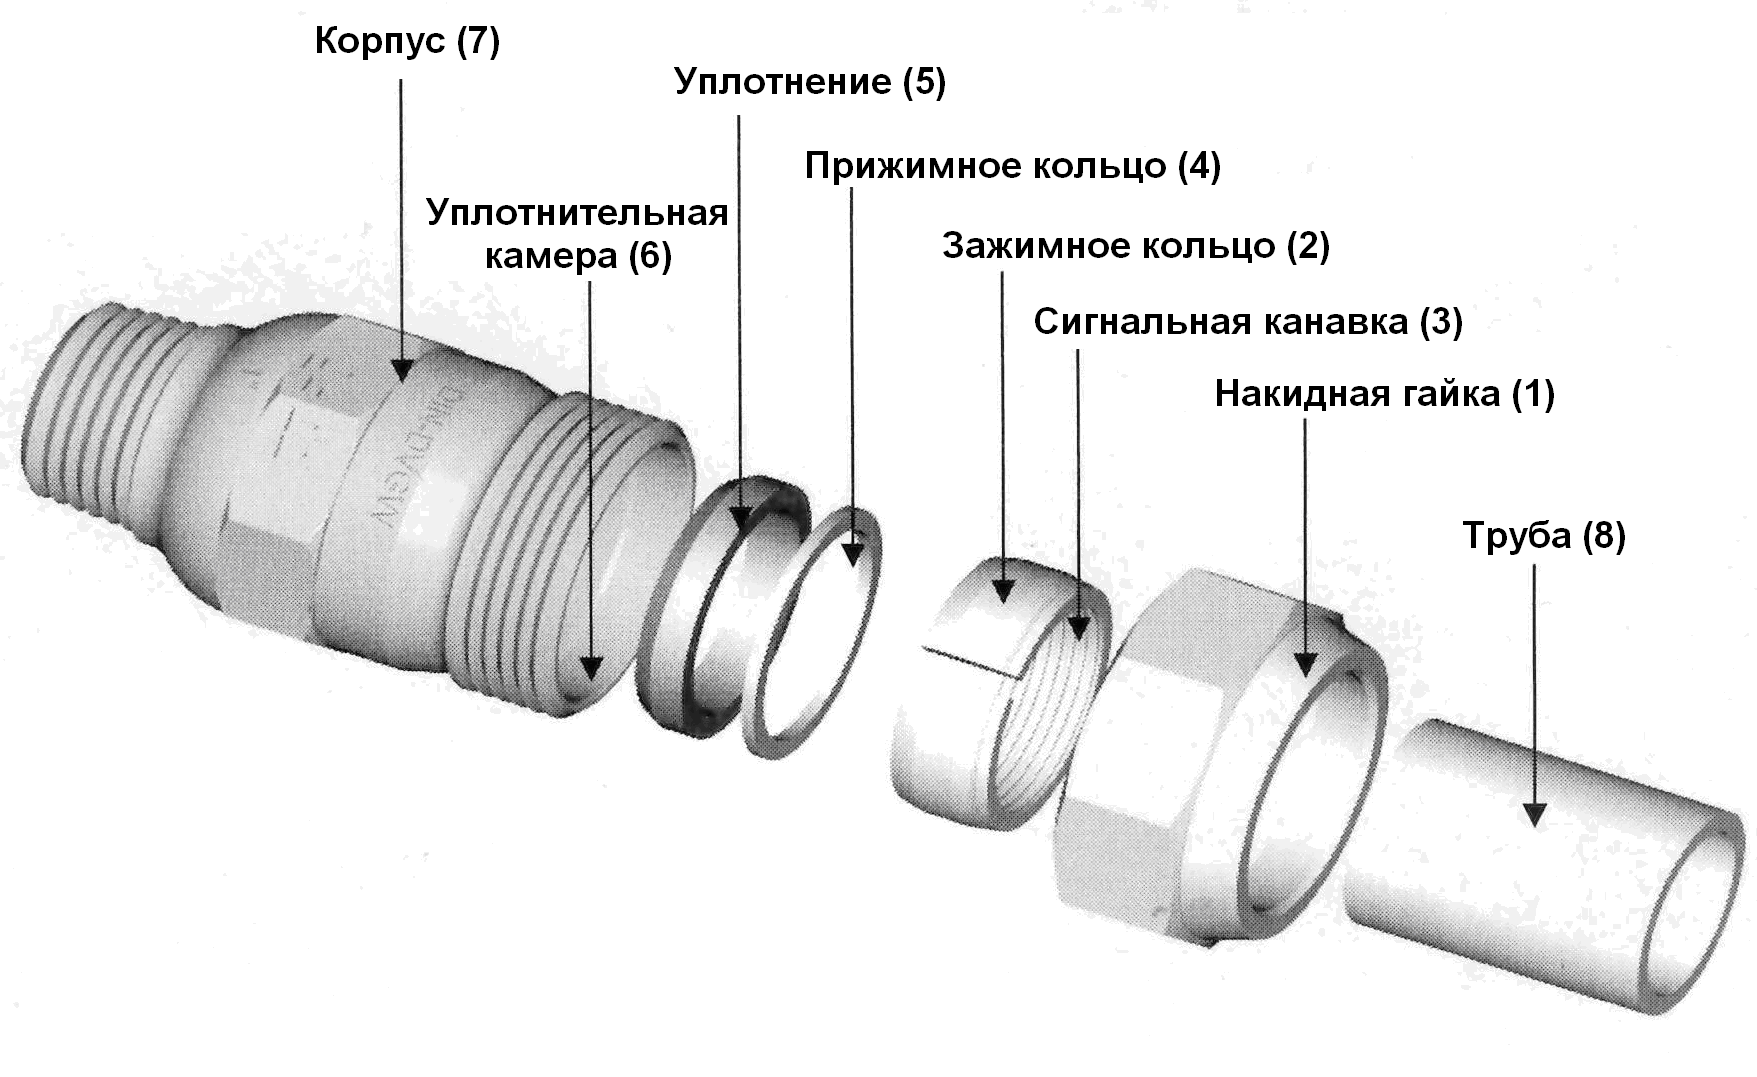 Соединение металлопластиковых труб с металлическими и полимерными при помощи фитингов